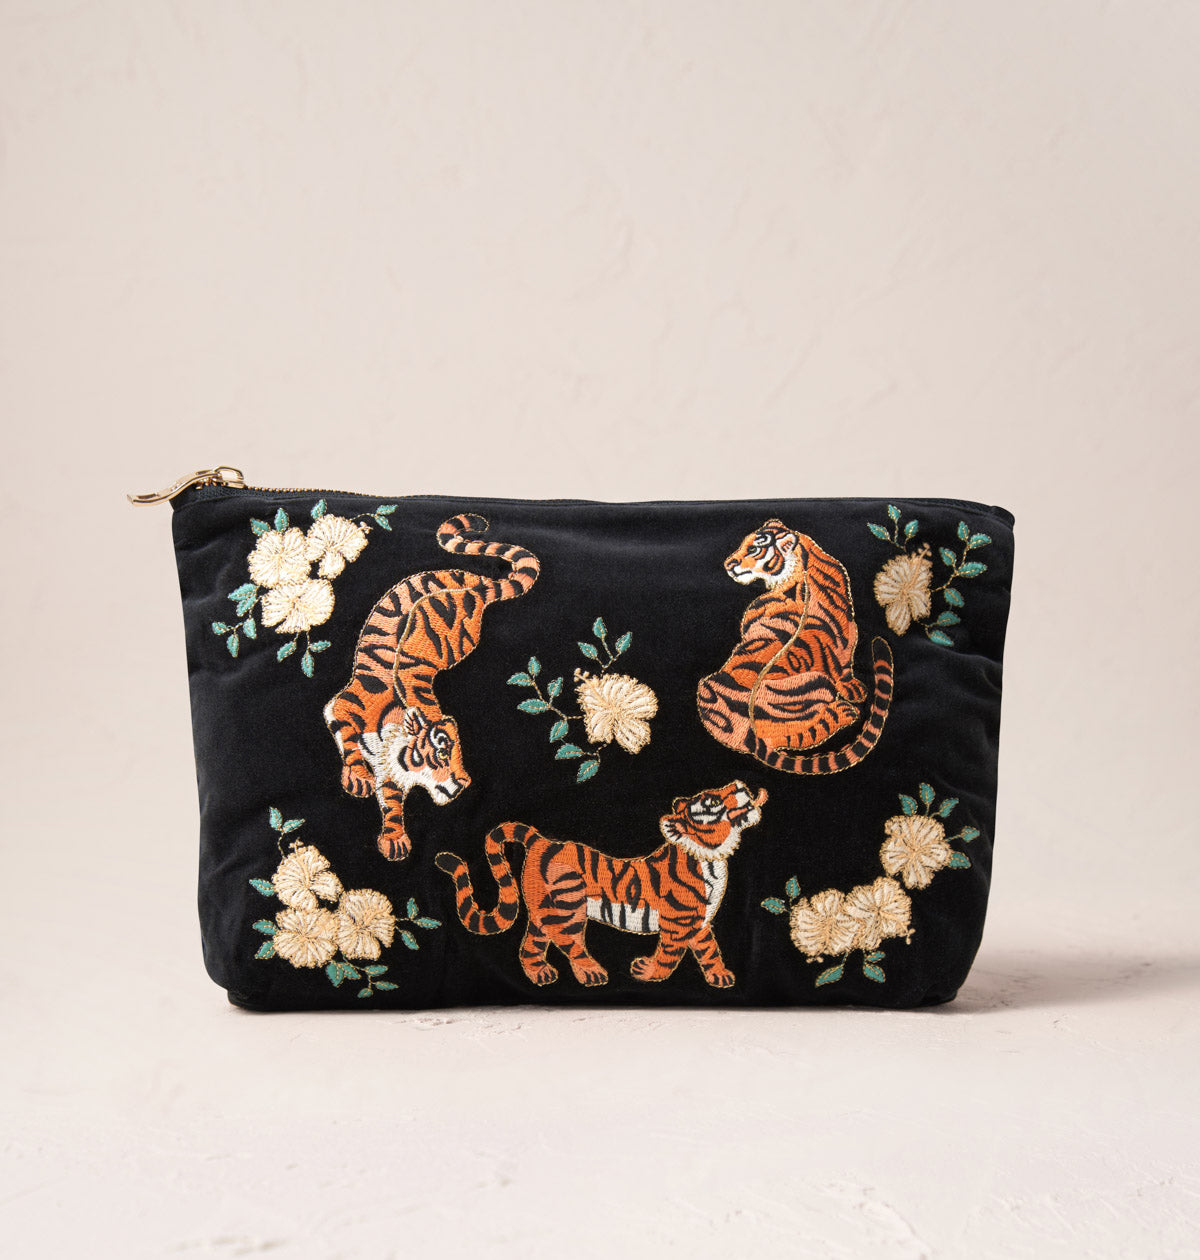 Mini Phoebe Tote Bag In Cheetah Print Vegan Patent Leather